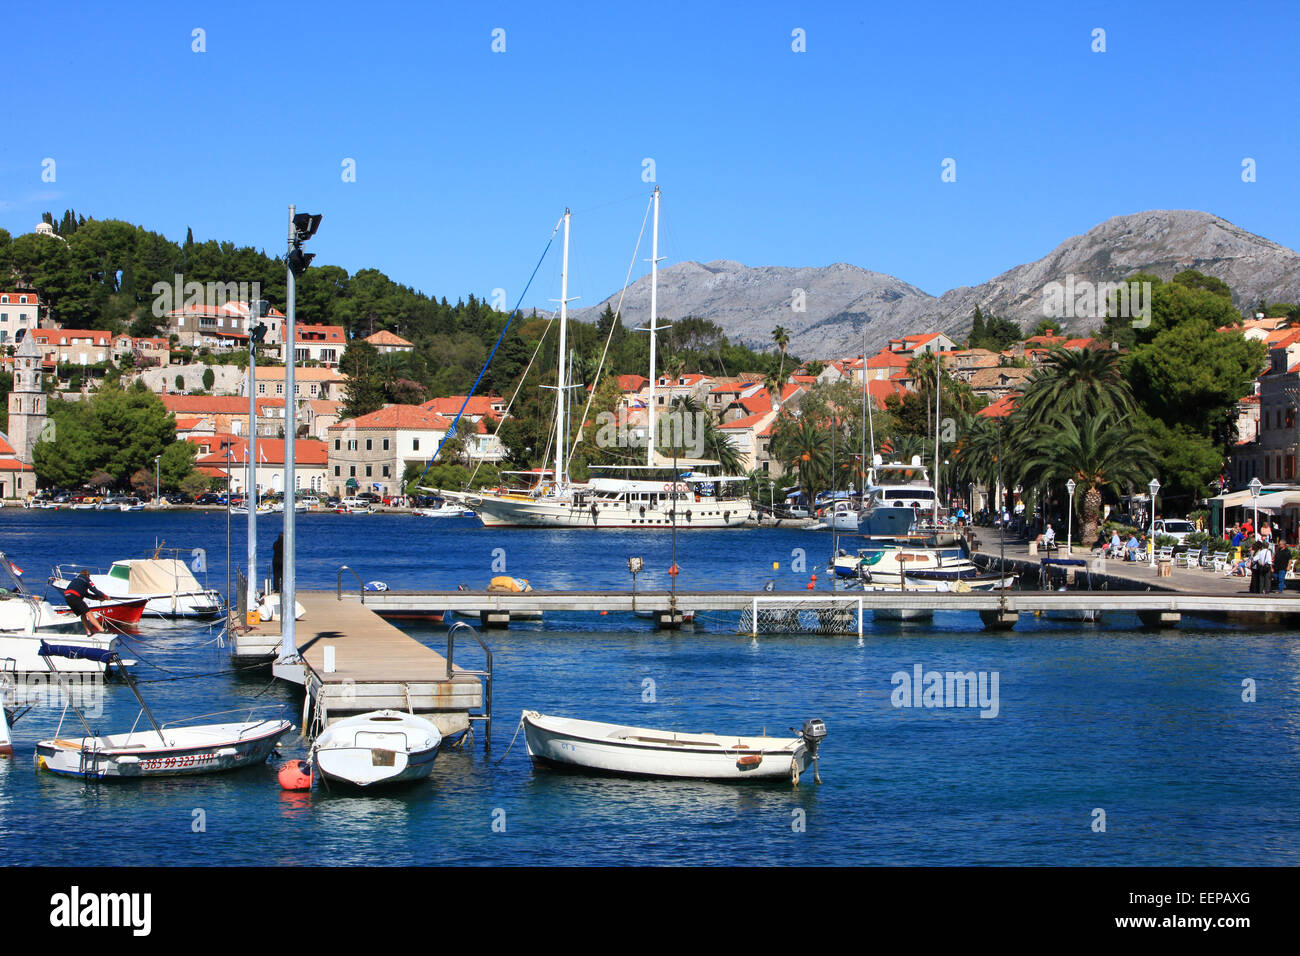 Cavtat, Croatie, port avec des bateaux dans le port et les yachts sur la mer Adreatic ; Europe centrale et de la Méditerranée. Banque D'Images